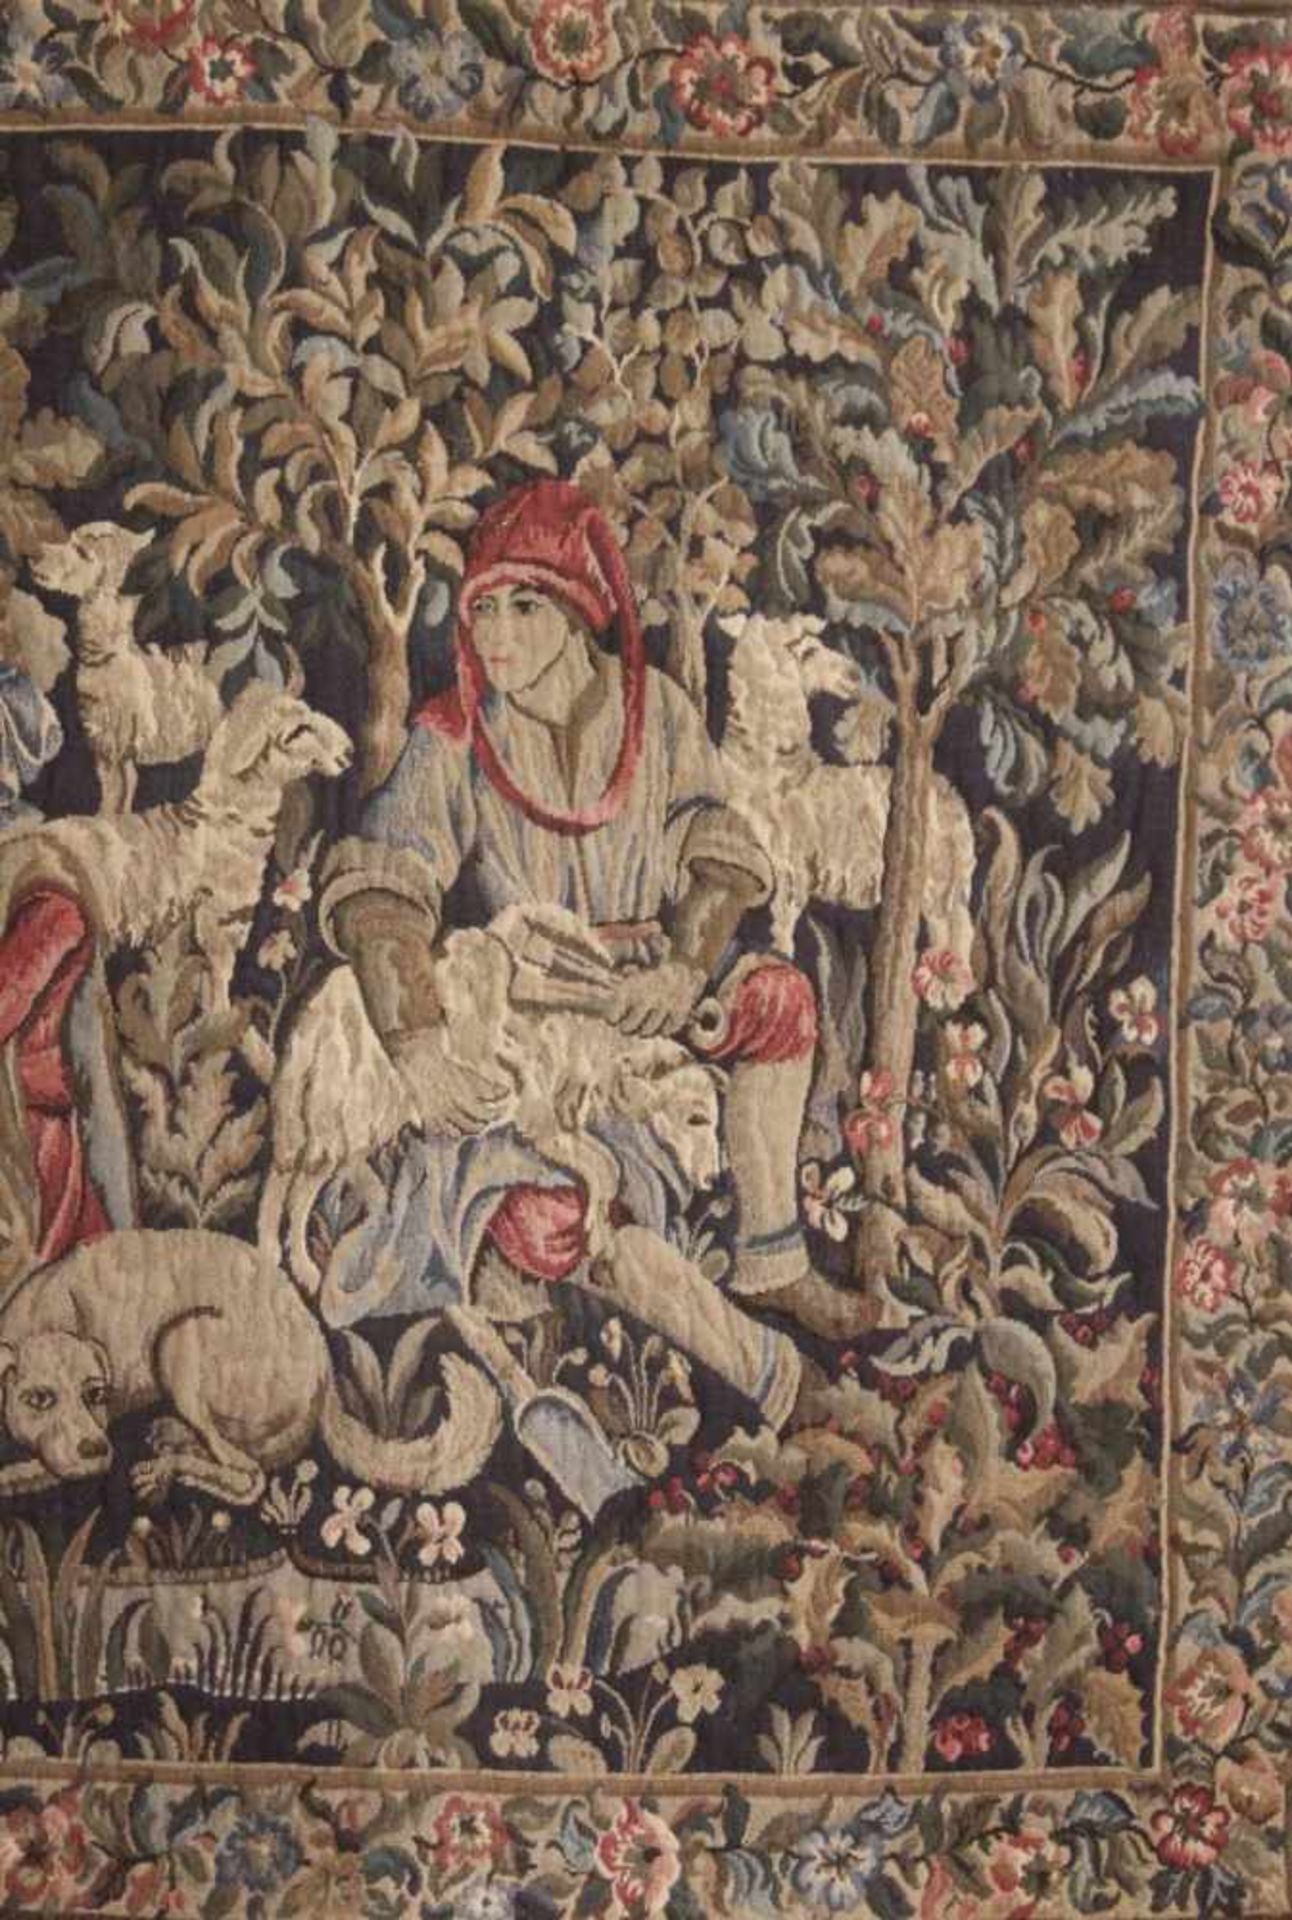 Großer Gobelin 20. Jh.Wolle, Personenstaffage mit Schafen, ca. 125 x 182 cm. Muss gereinigt werden.- - Bild 4 aus 4